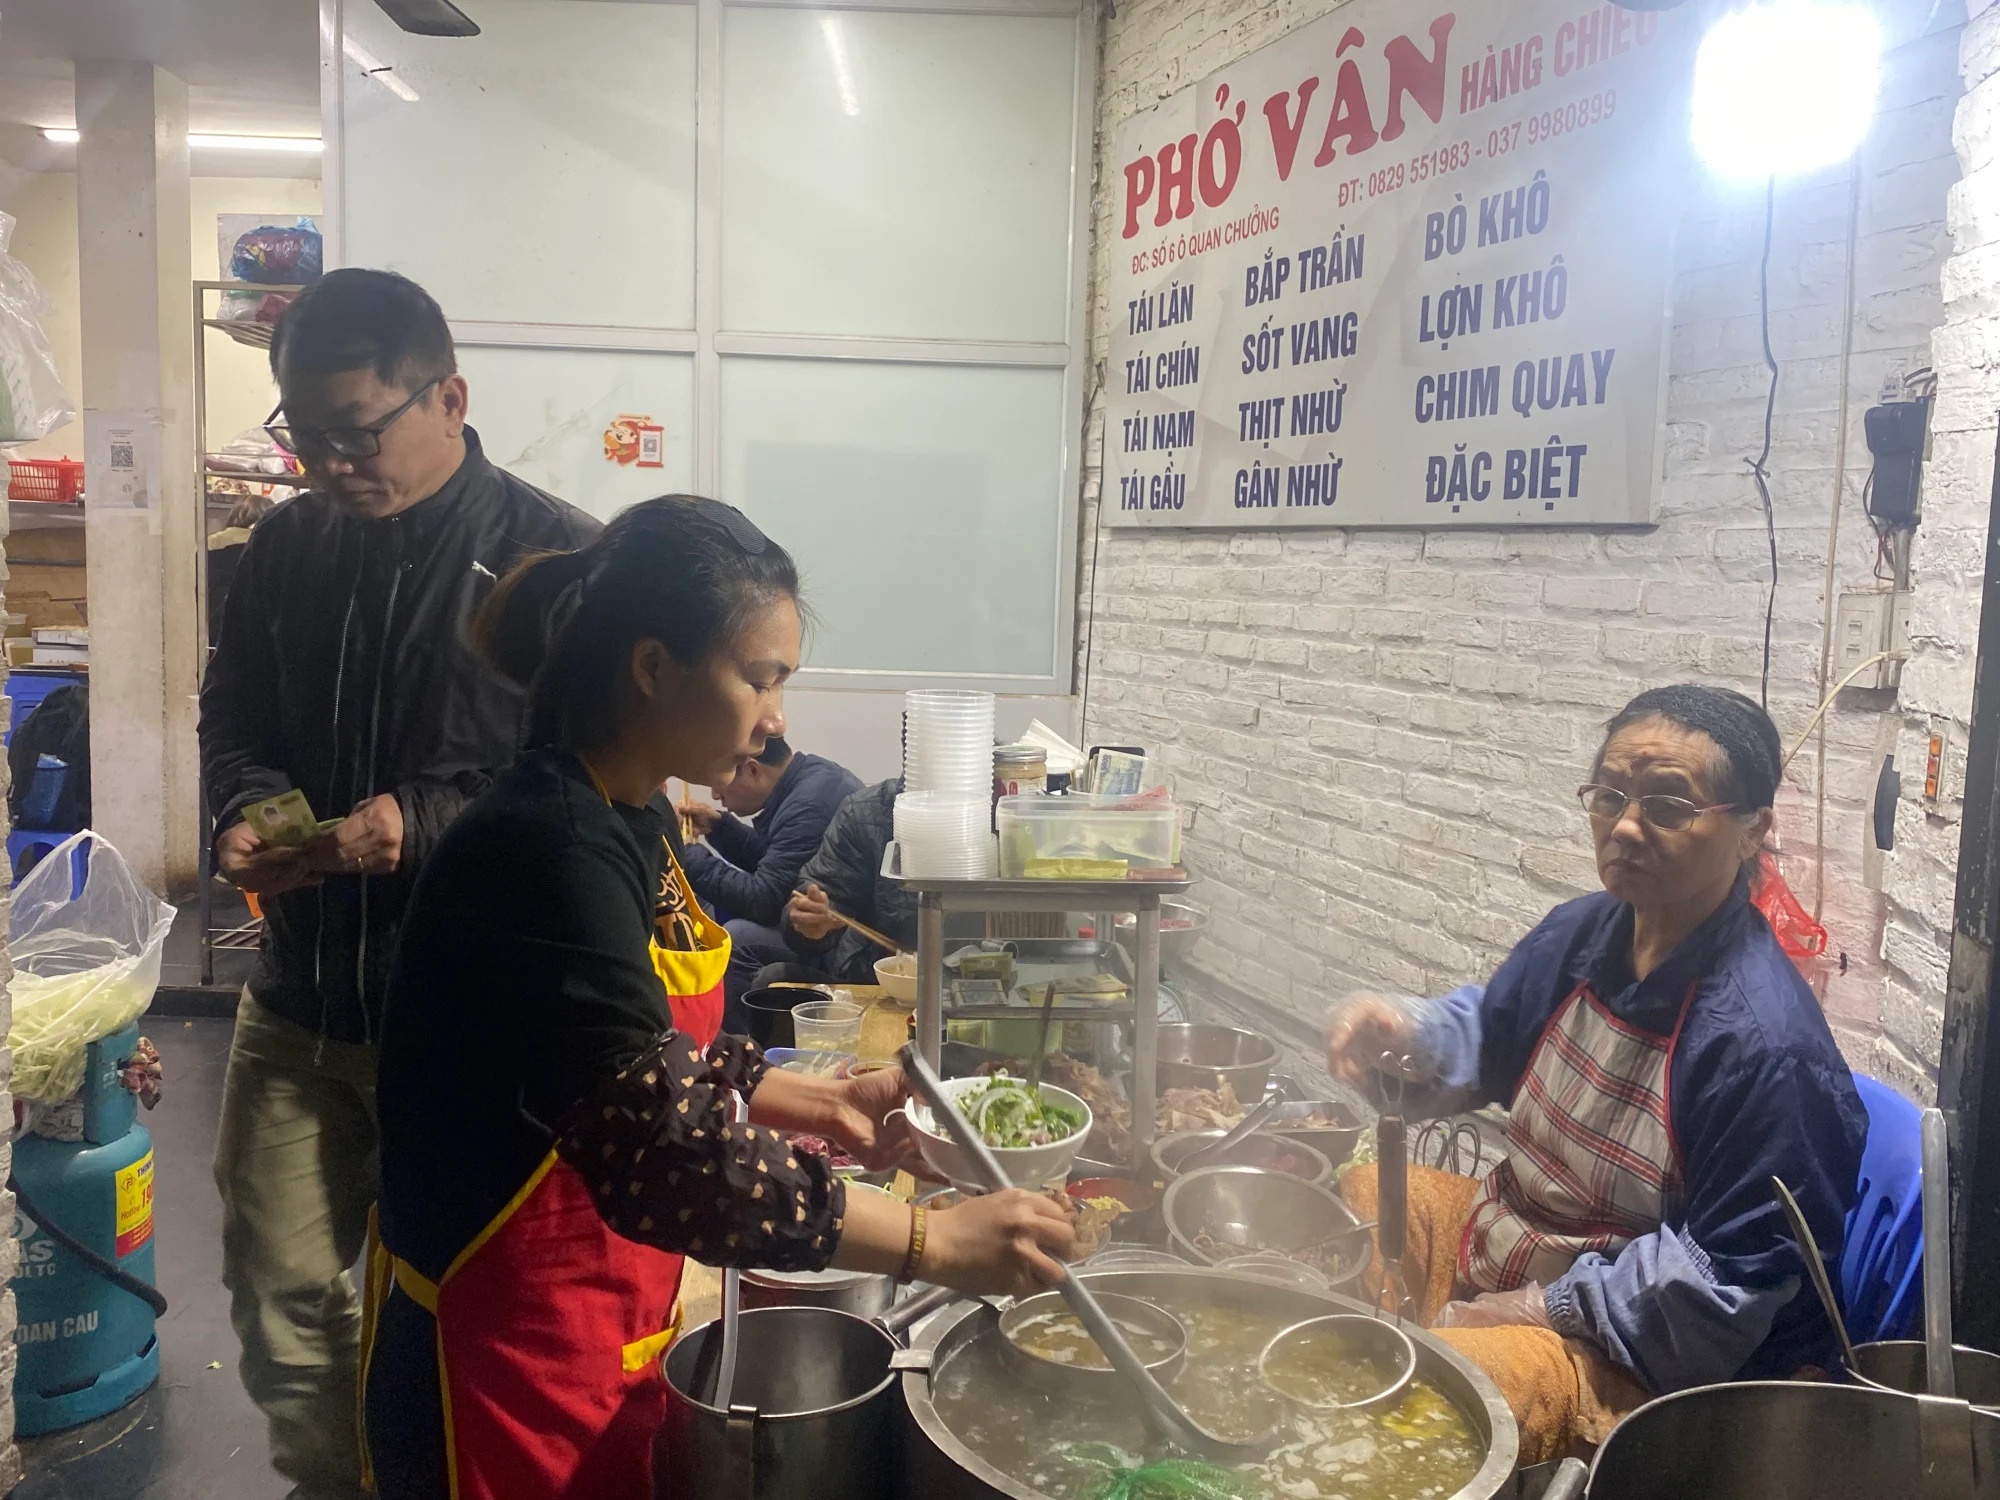 Khách ngoại thử phở bò wagyu, cocktail phở tại Việt Nam - ảnh 2